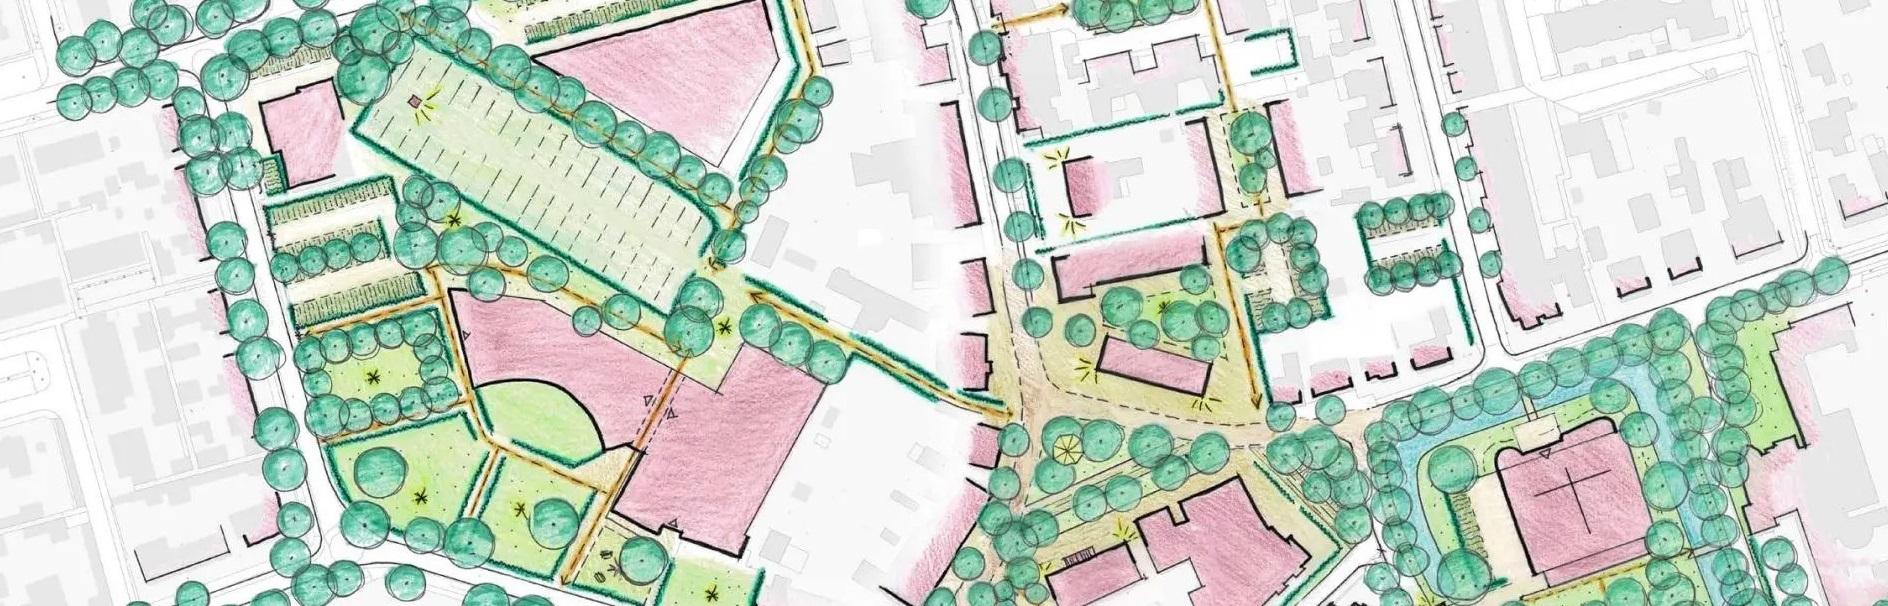 Tekening van het dorpshart Lieshout met bomen, straten en terrein